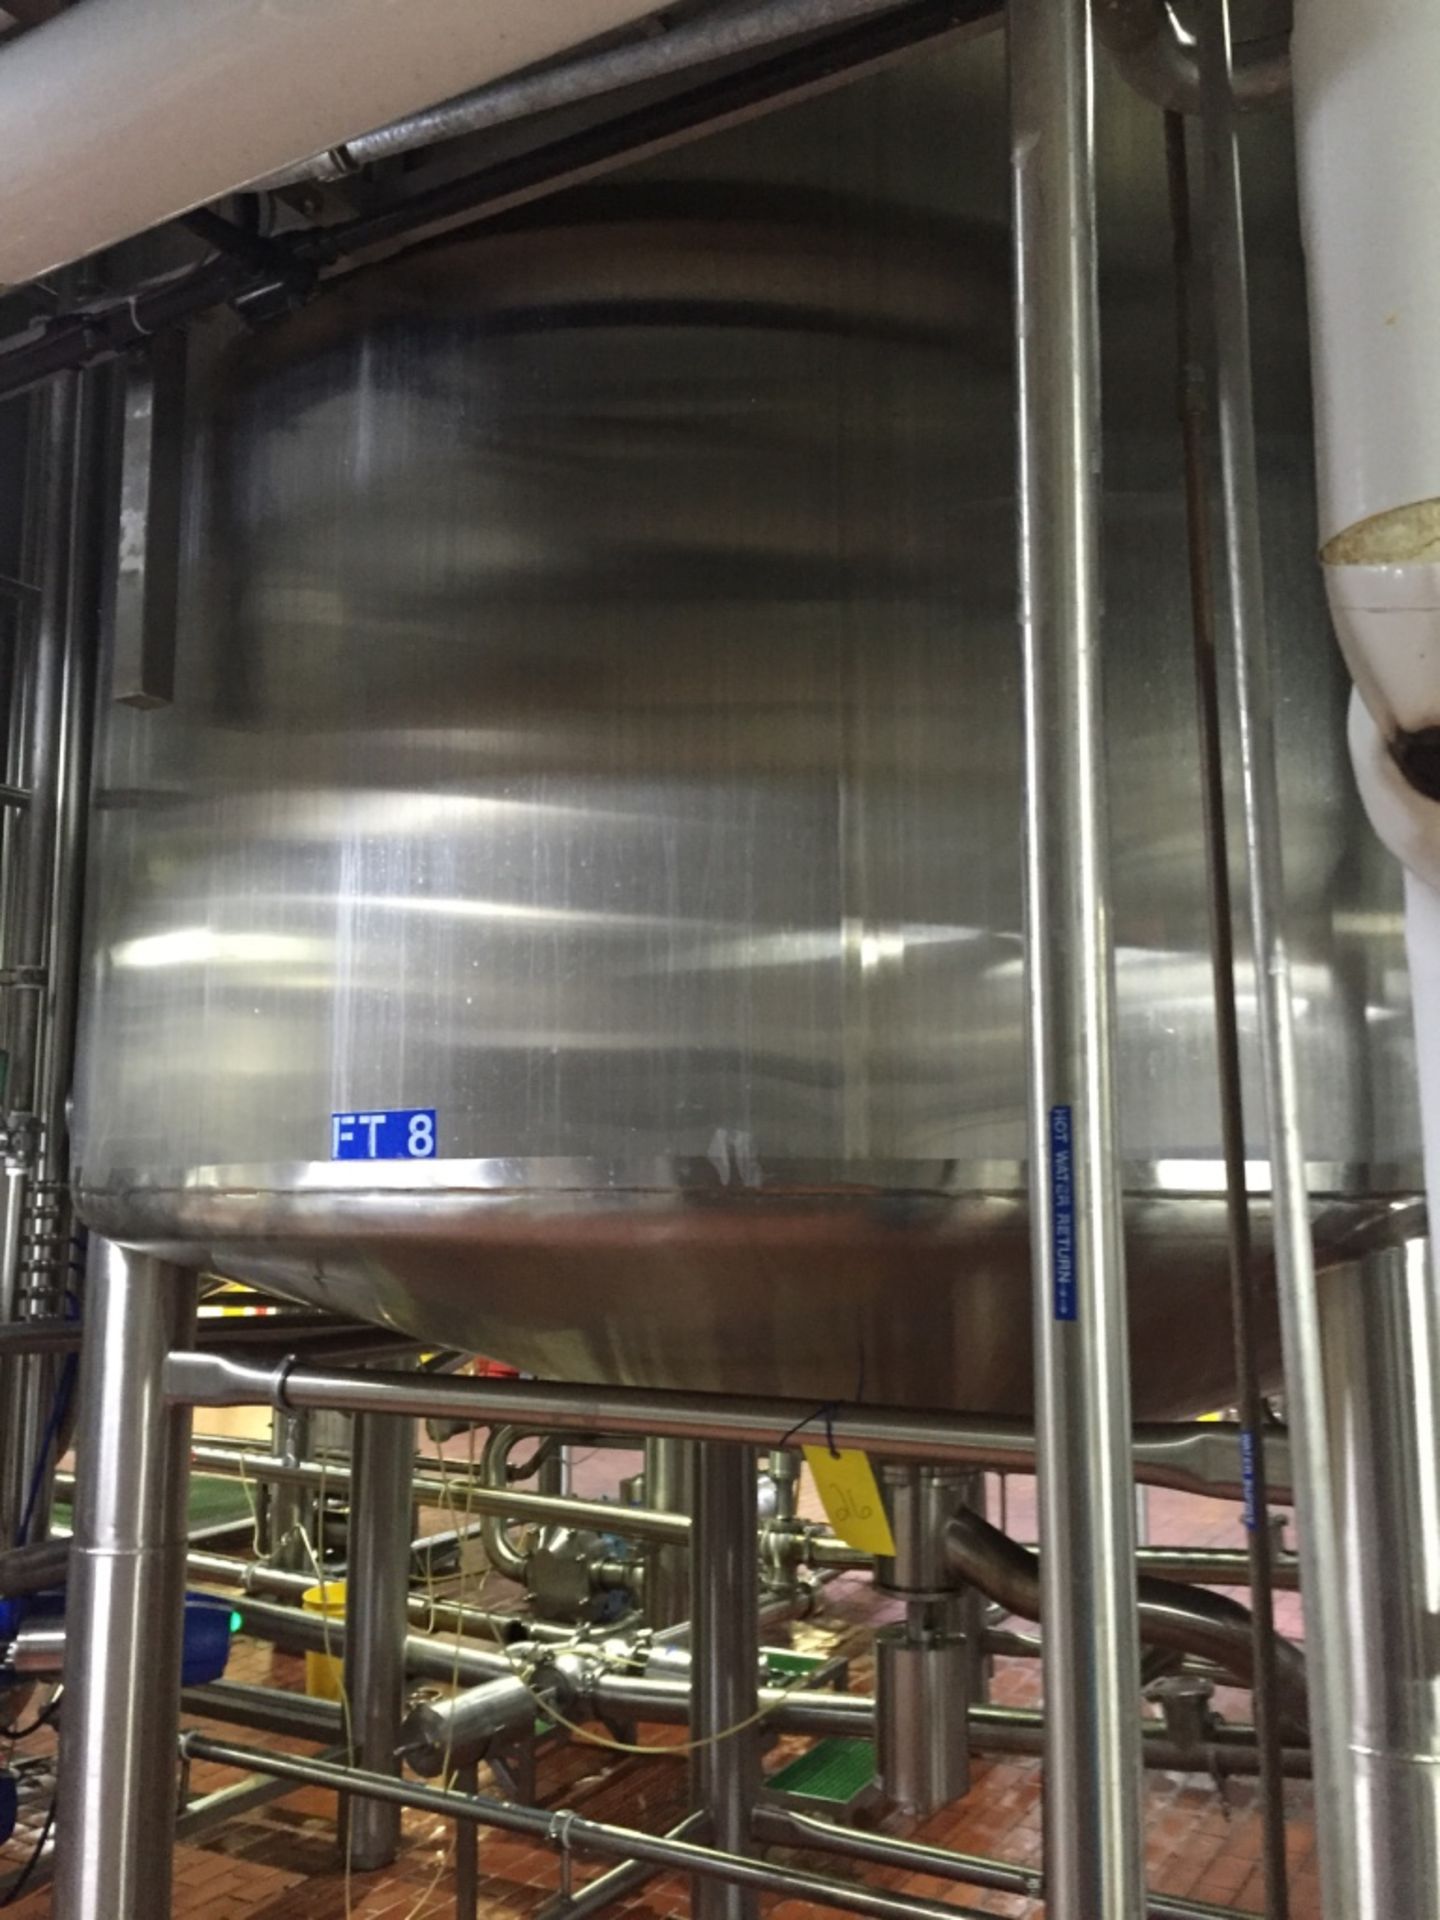 Feldmeier 4000 Gallon Stainless Fermentation Tank S/N E-1275-06 TANK # FT8 - Rigging Fee $600, If